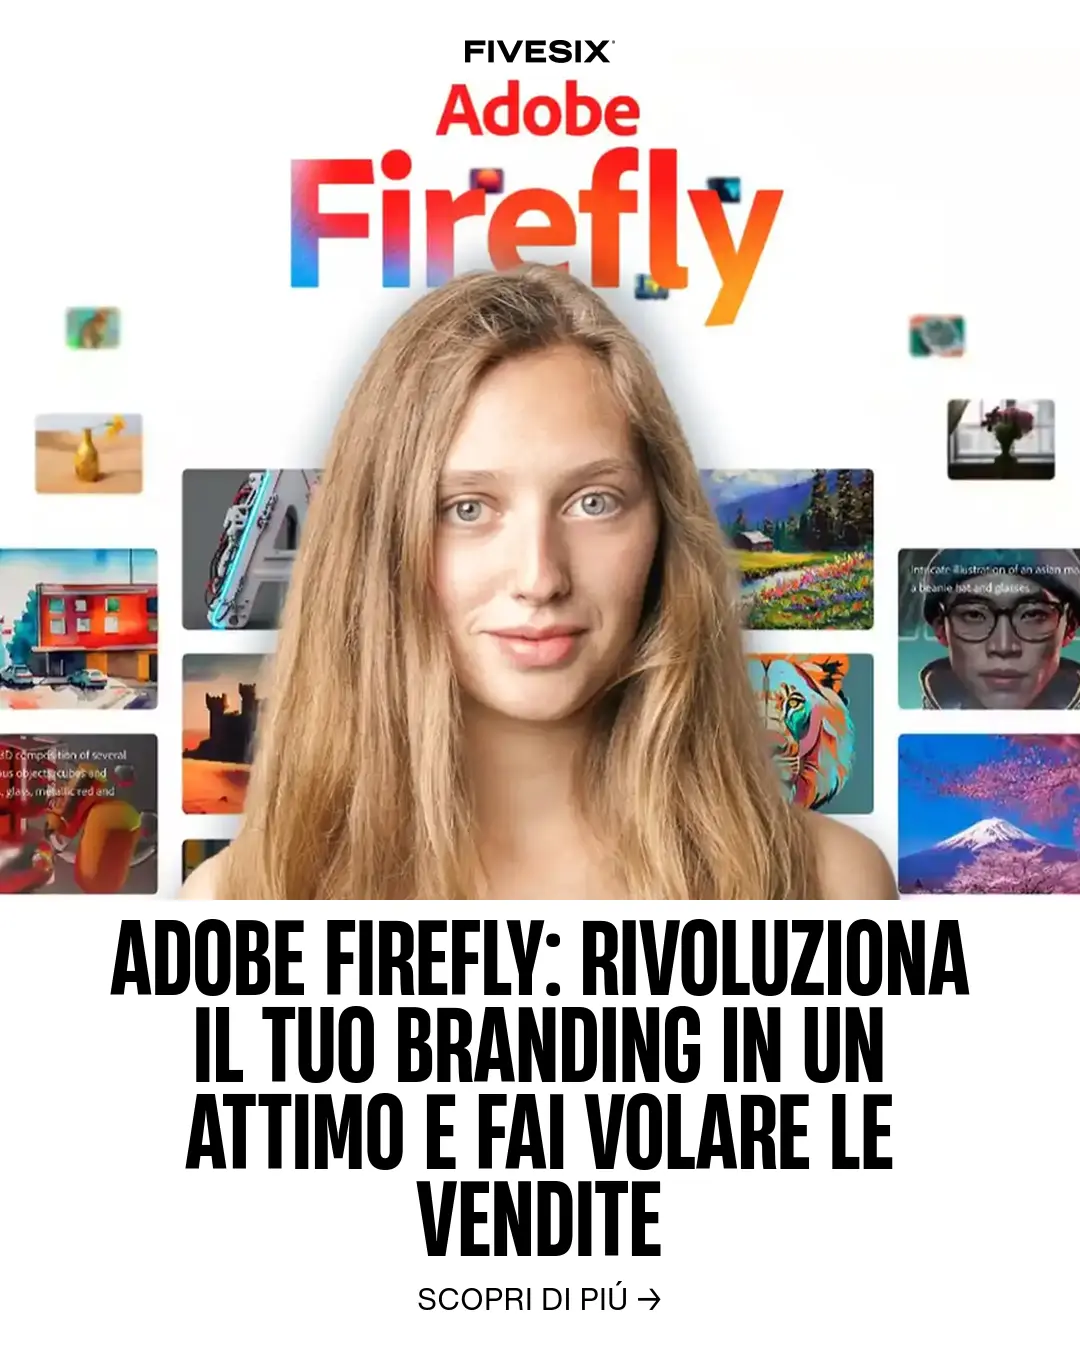 Immagine per 'Adobe Firefly: Rivoluziona il tuo Branding in un attimo e fai volare le vendite' - Fivesix Studio. Specializzati in Branding, Personal Brand, Marketing e Comunicazione.